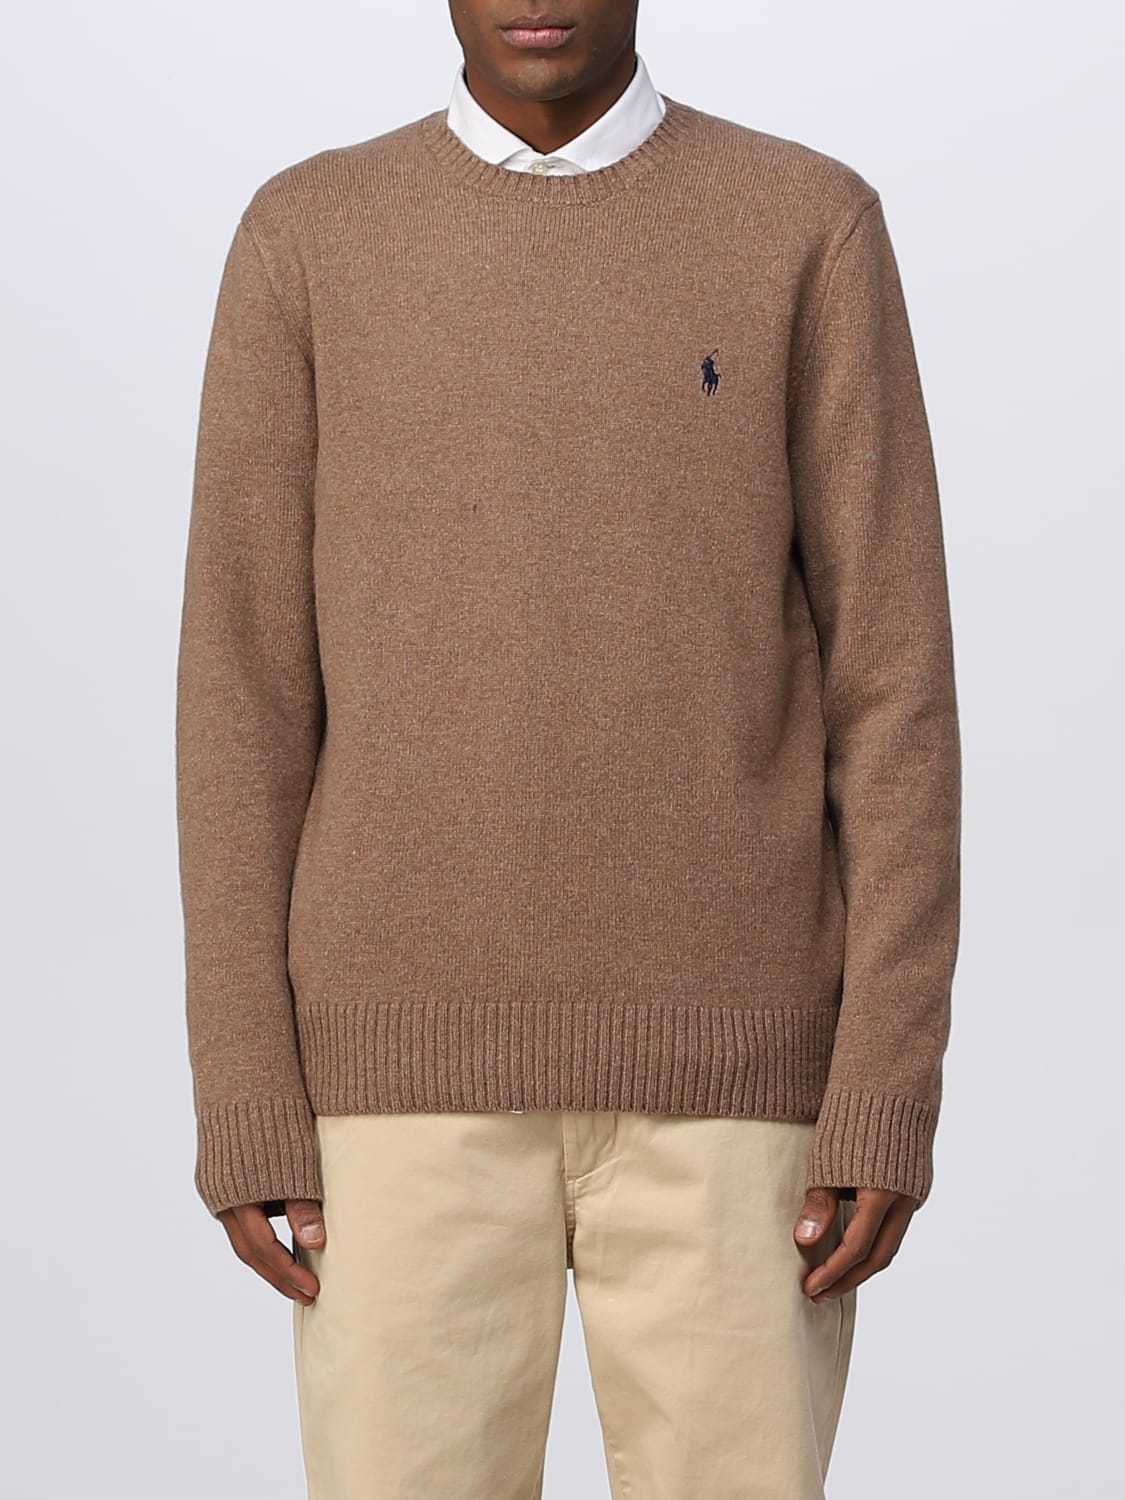 Ruim Dij Bijna dood POLO RALPH LAUREN: sweater for man - Brown | Polo Ralph Lauren sweater  710878292 online on GIGLIO.COM